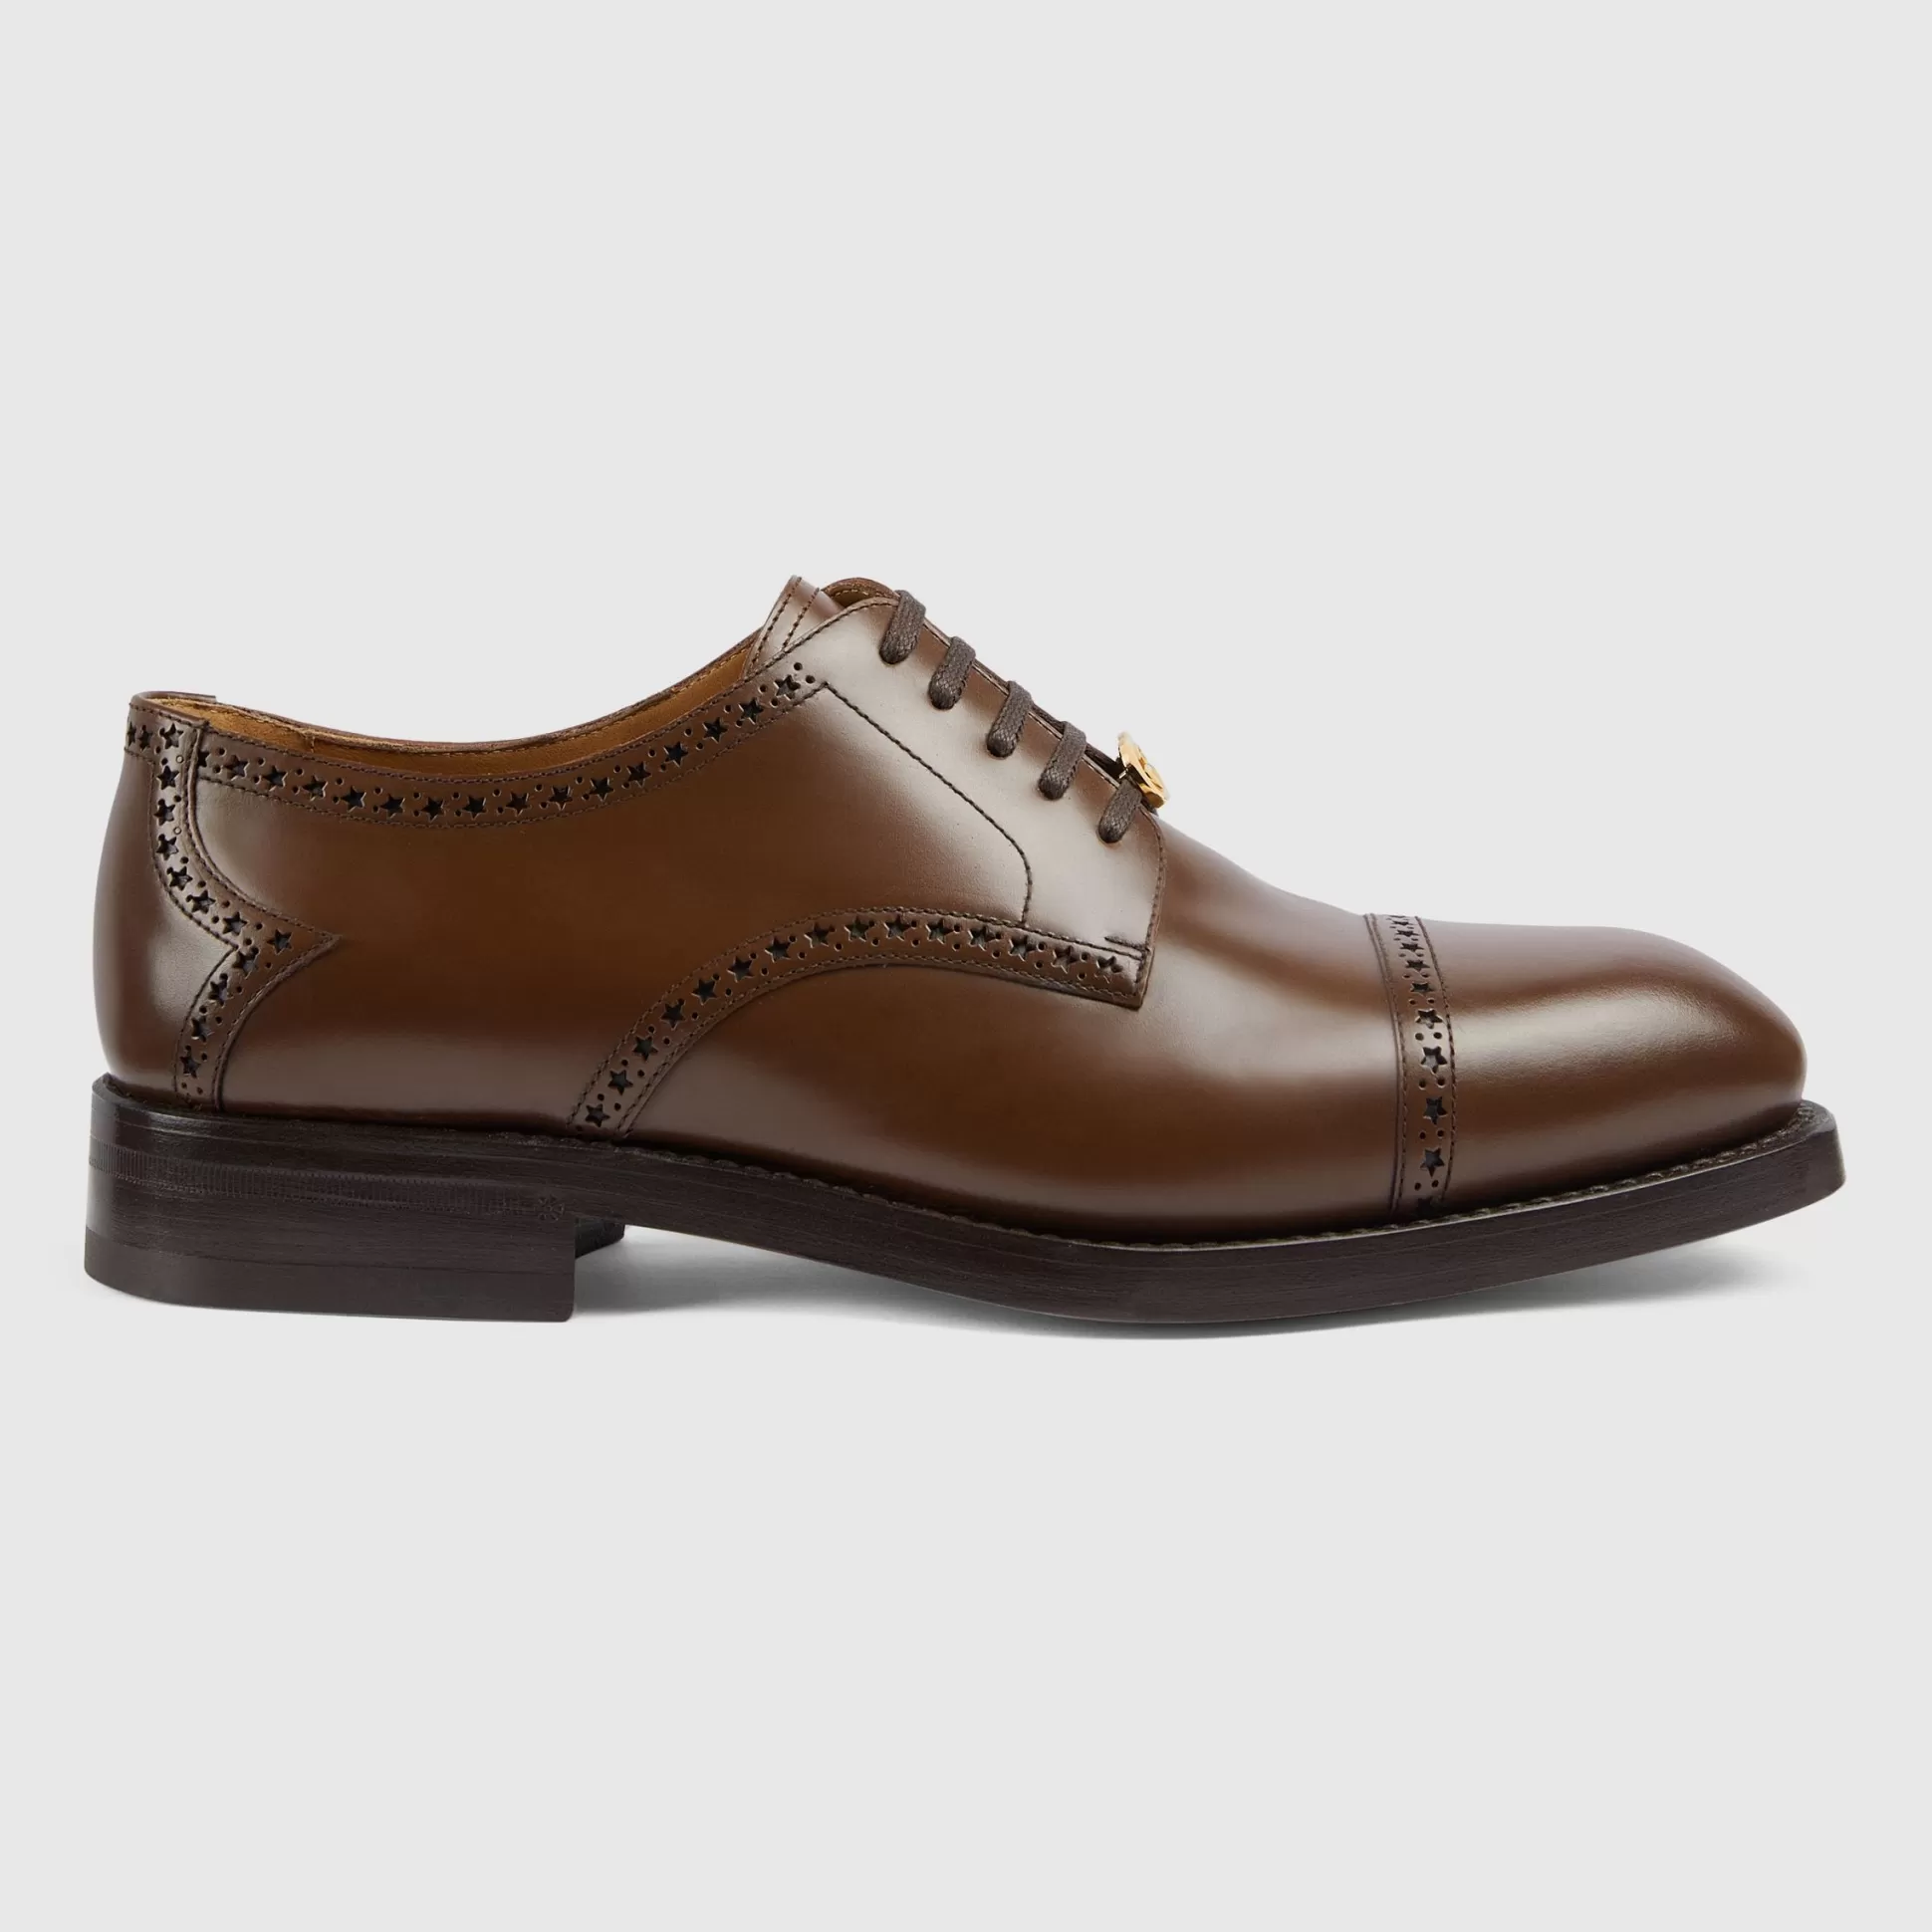 GUCCI Men'S Lace-Up Shoe With Brogue Details-Men Dress Shoes